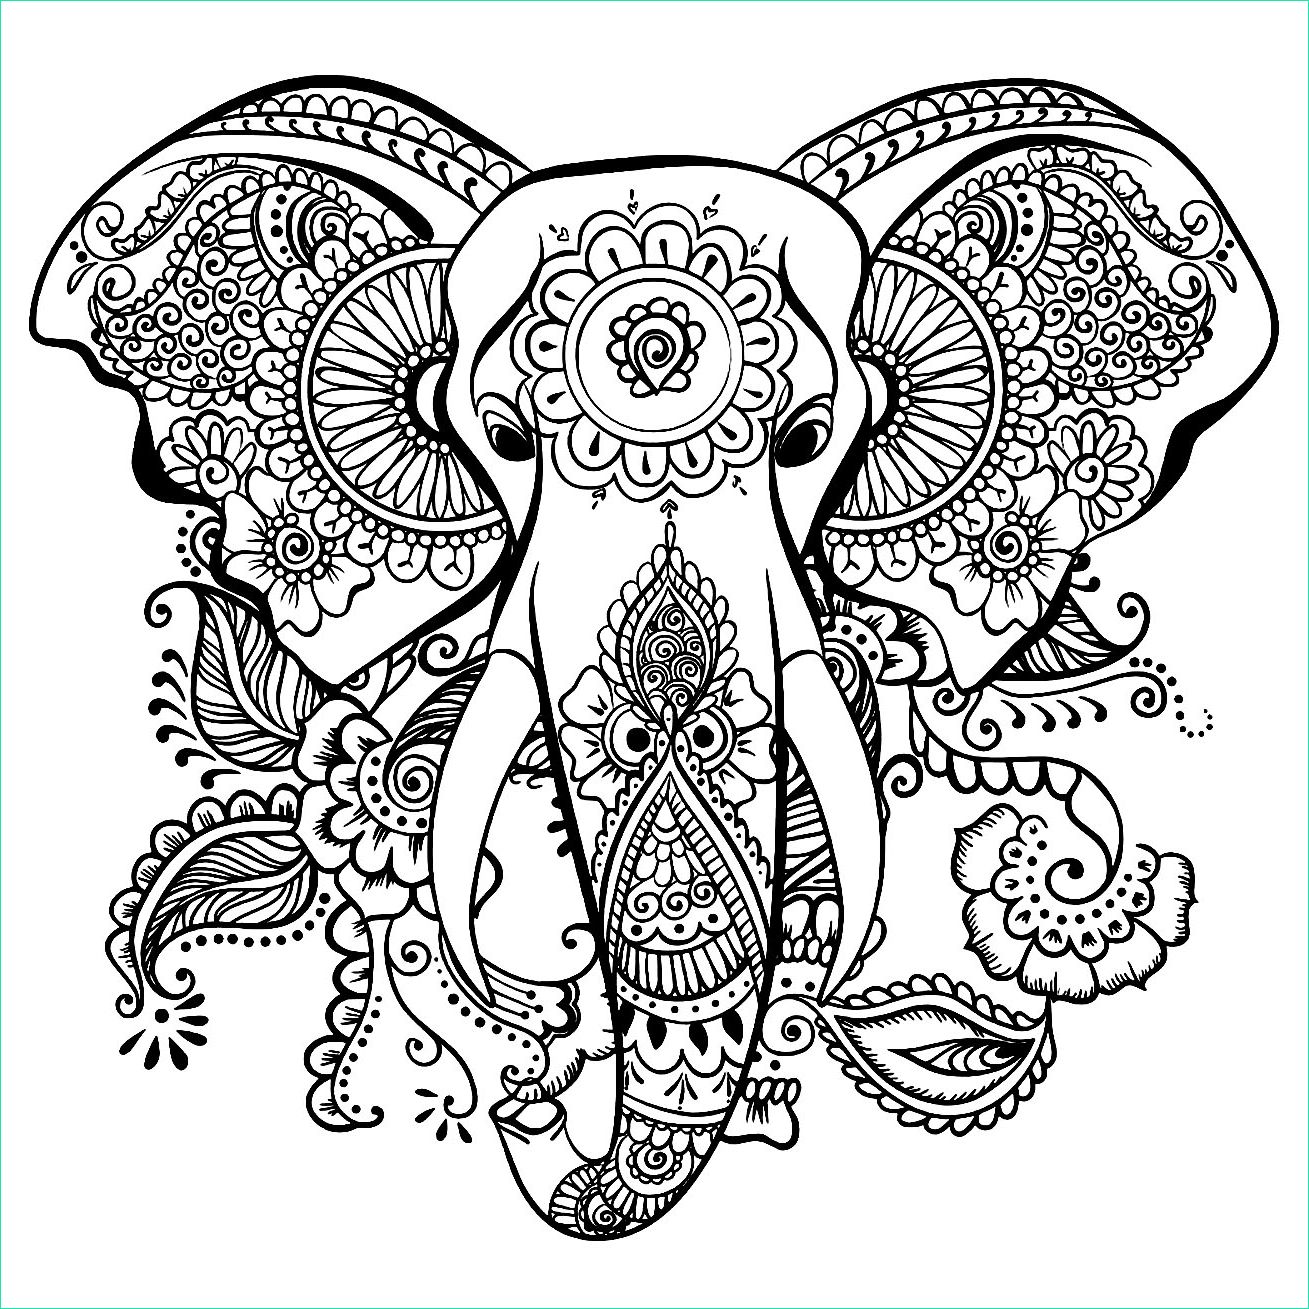 Dessin Elephant A Imprimer Luxe Photographie Dessin D éléphant Gratuit à Imprimer Et Colorier